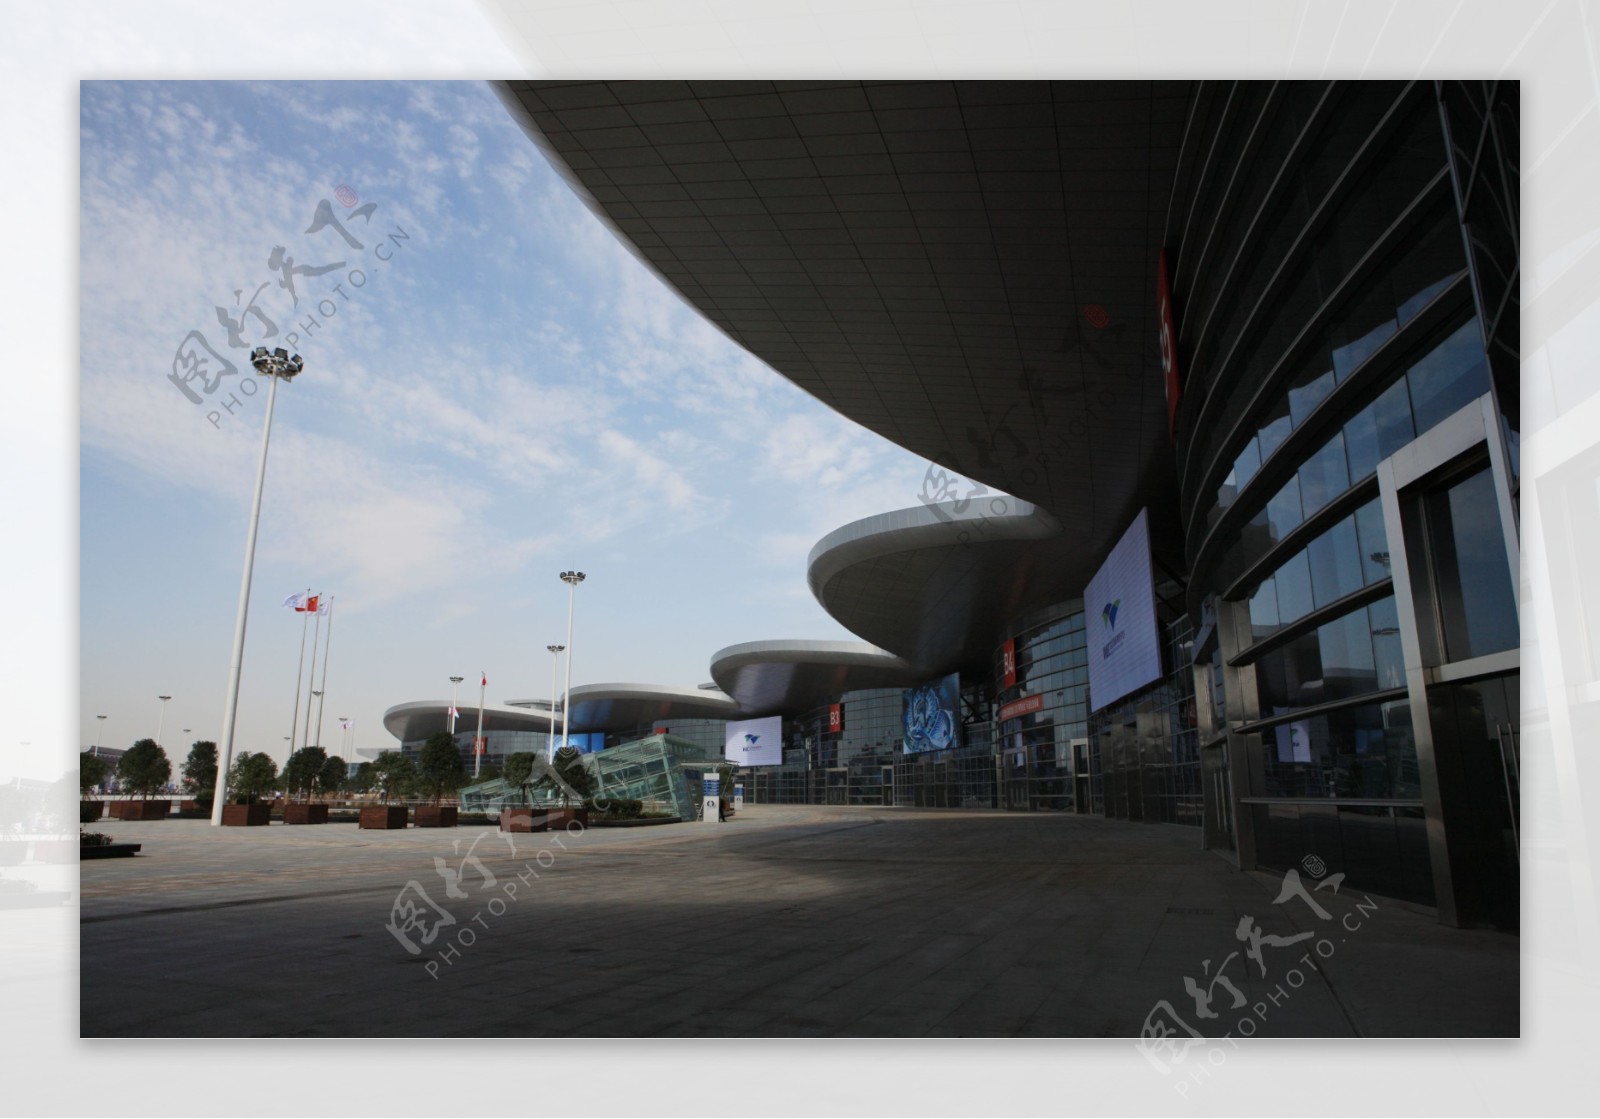 武汉国际博览中心图片